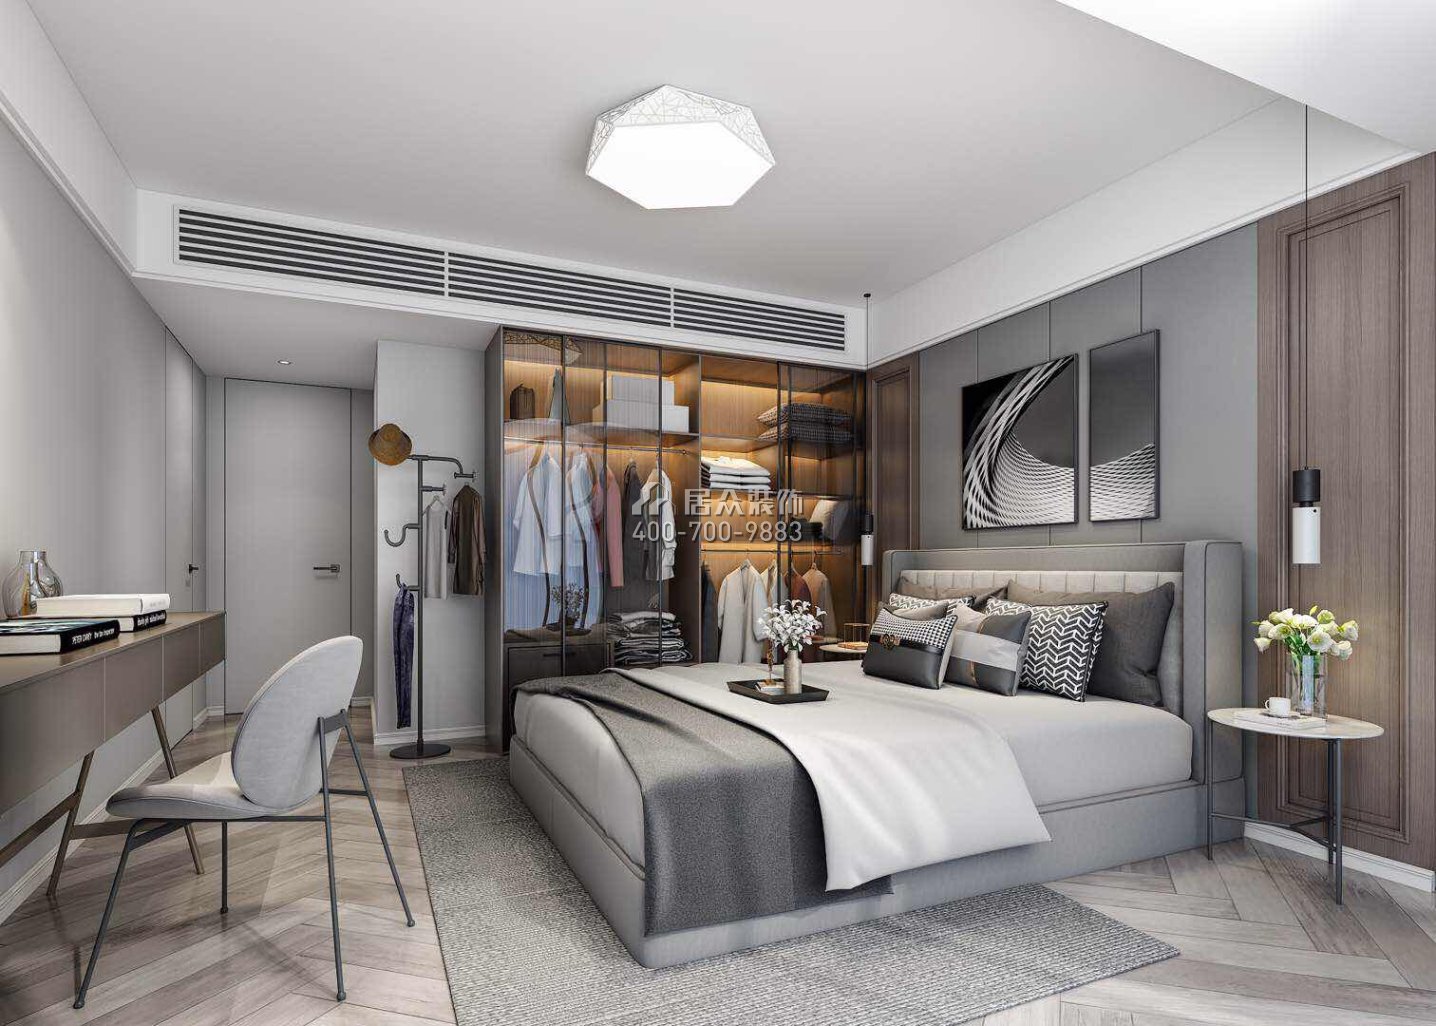 星河明居150平方米现代简约风格平层户型卧室装修效果图